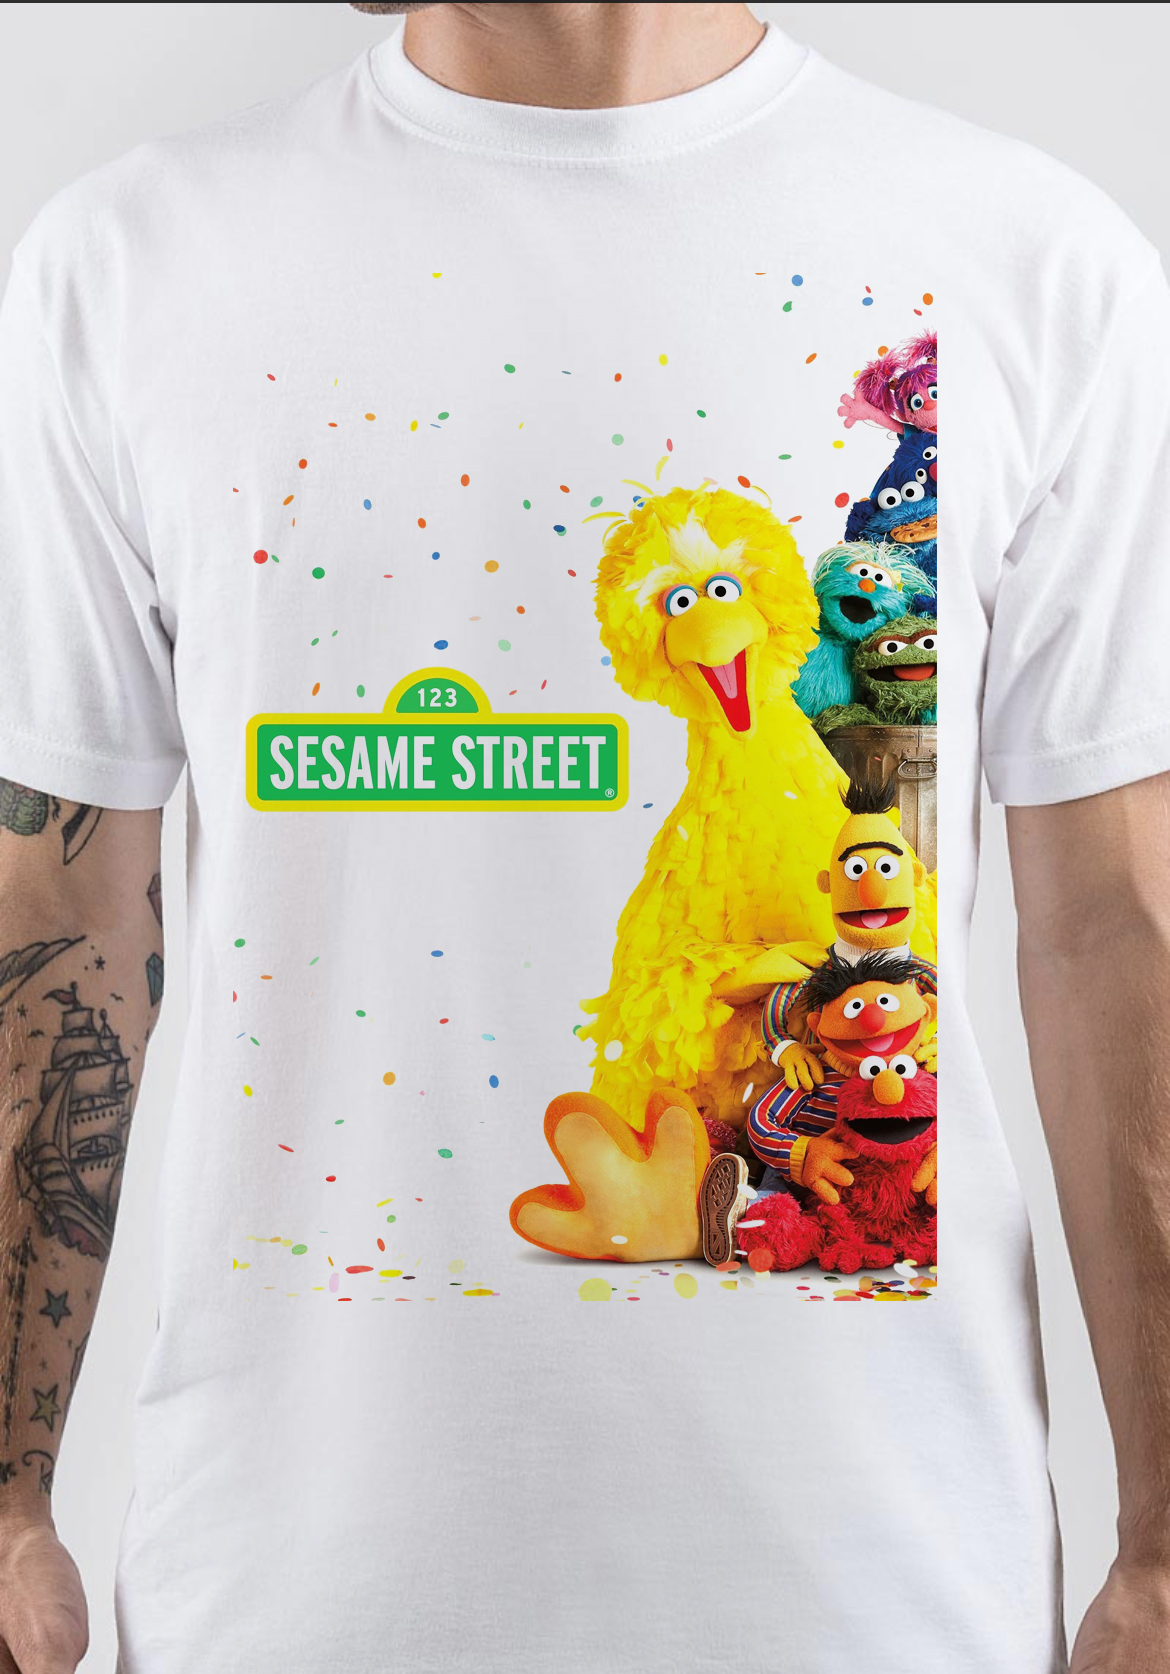 Sesame Street T-Shirt And Merchandise